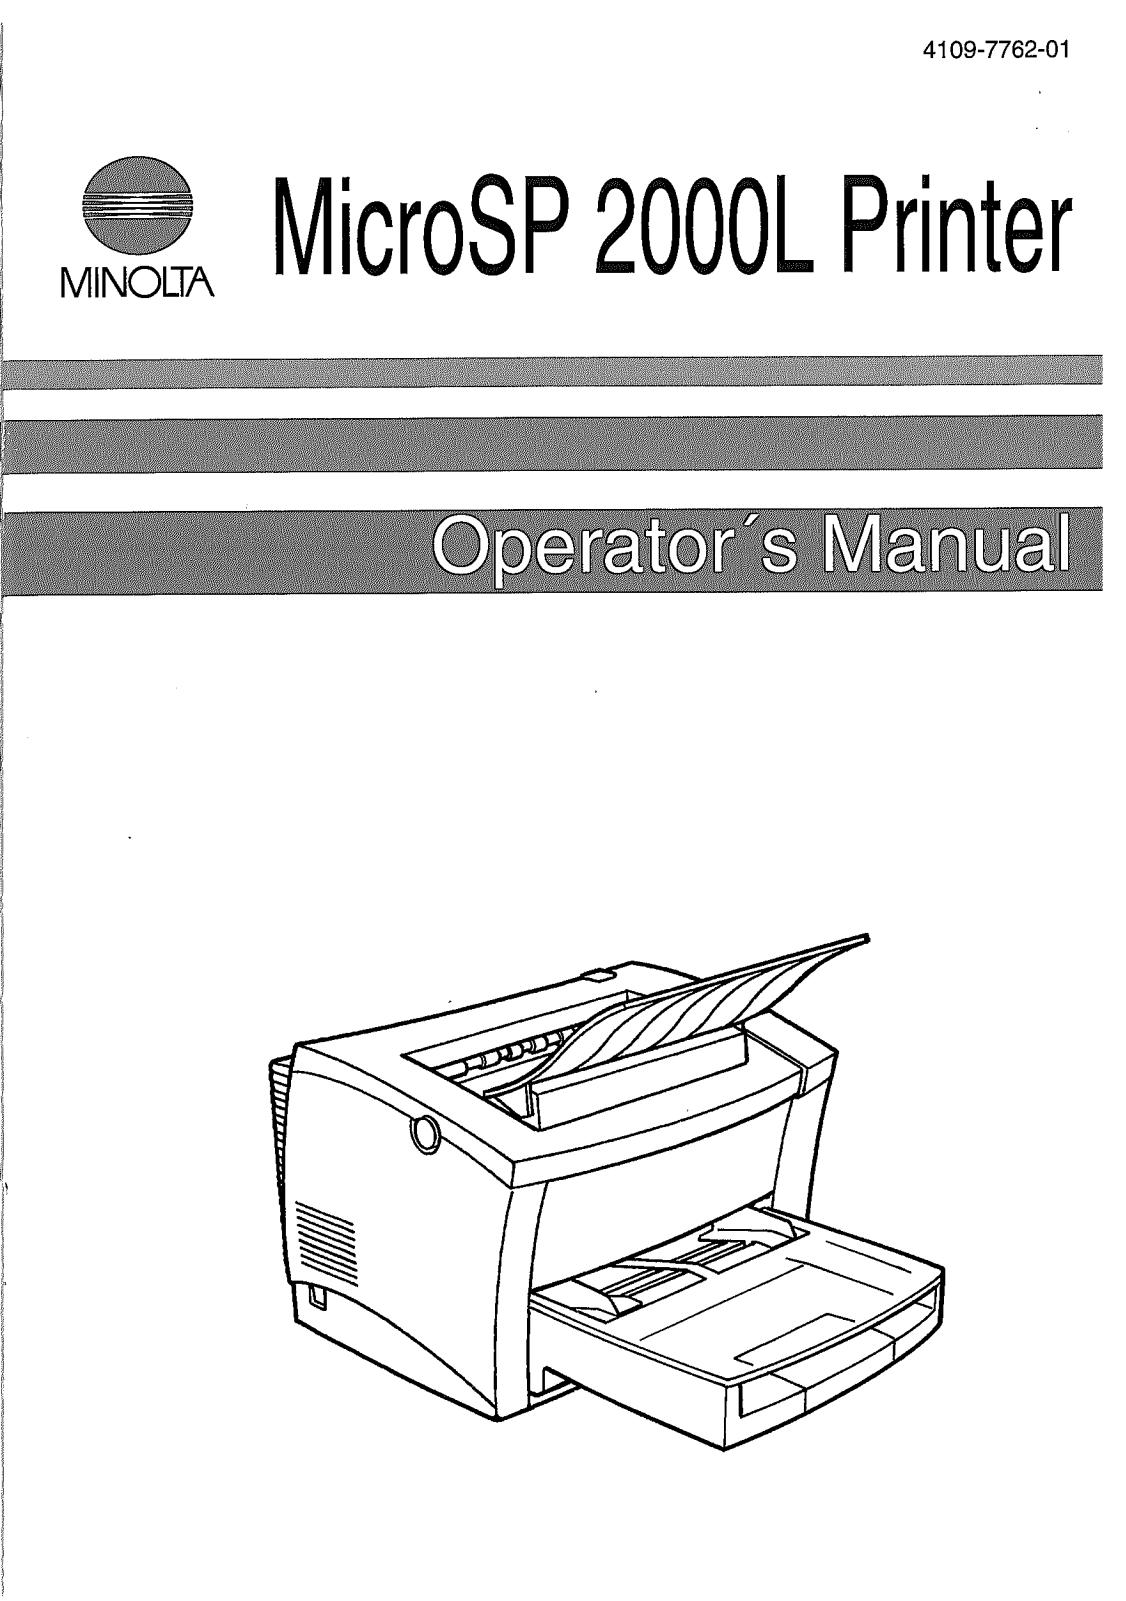 Konica Minolta MICROSP 2000L Manual